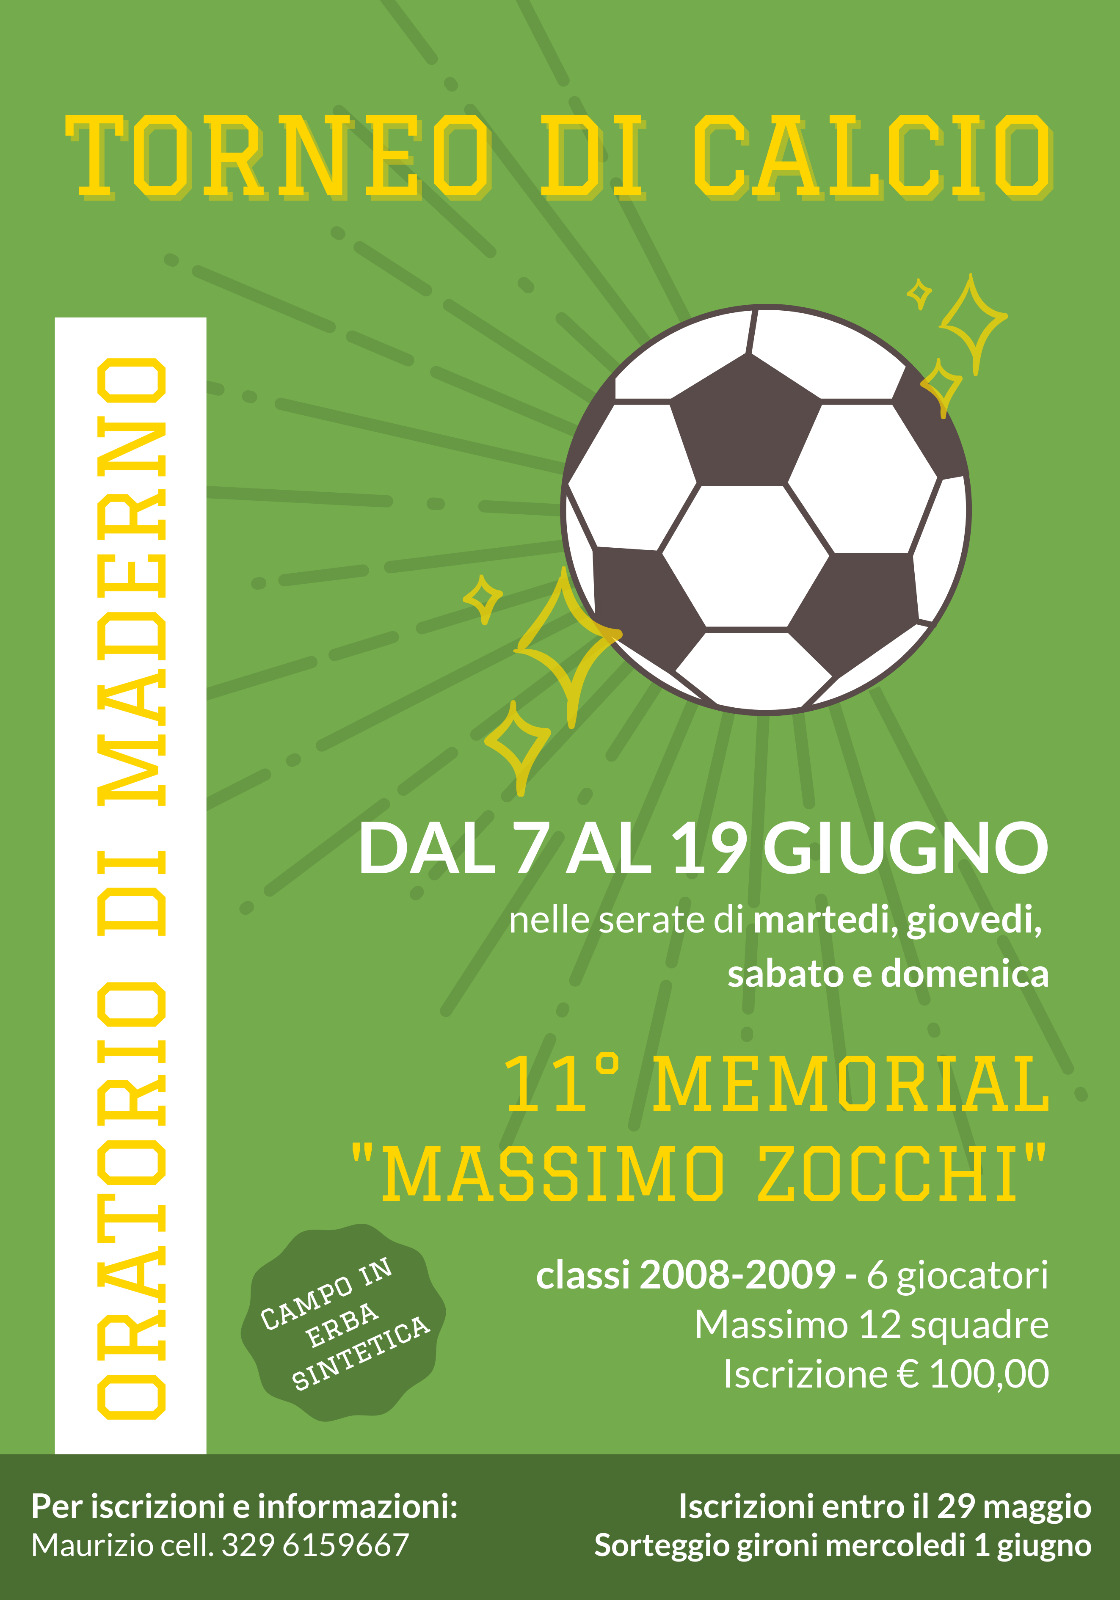 Torneo di Calcio - 11? Memorial Massimo Zocchi